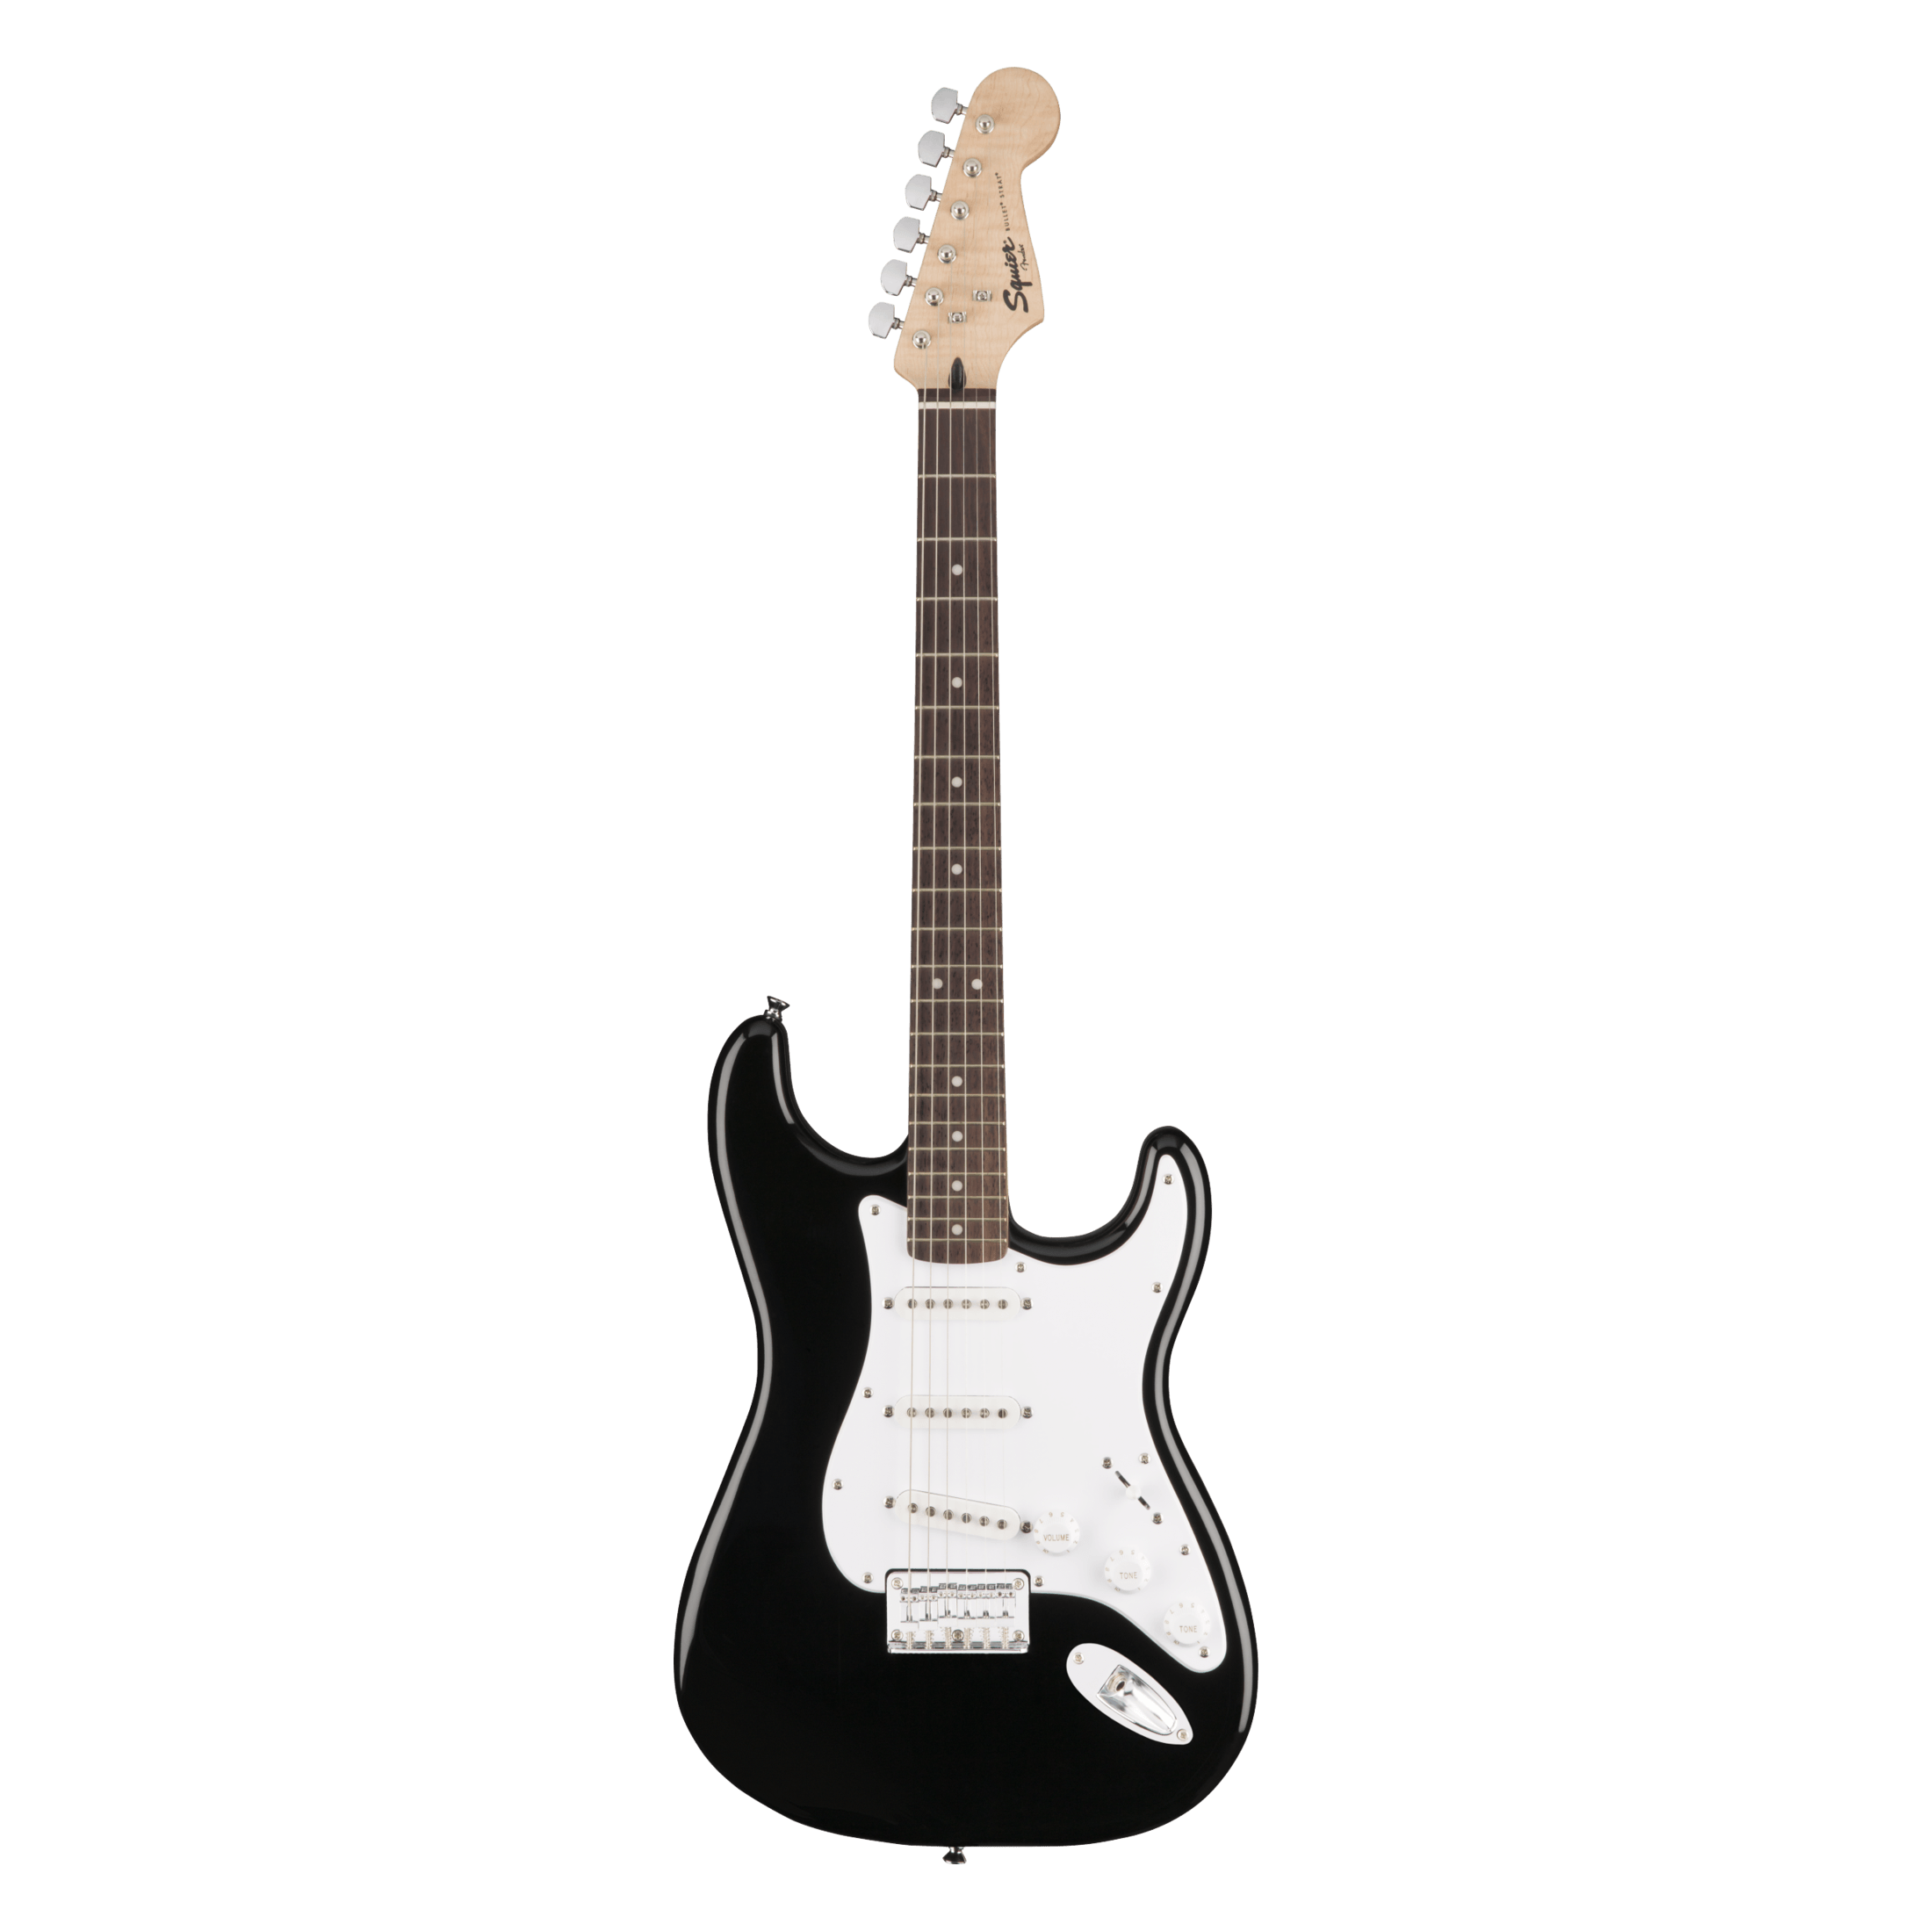 Exquisita Fender Guitarra Cable Cable Jack Línea Bass Caja Eléctrica Cable  de Audio Línea de Reducción de Ruido Color Trenzado Cable Blindado 3 Metros